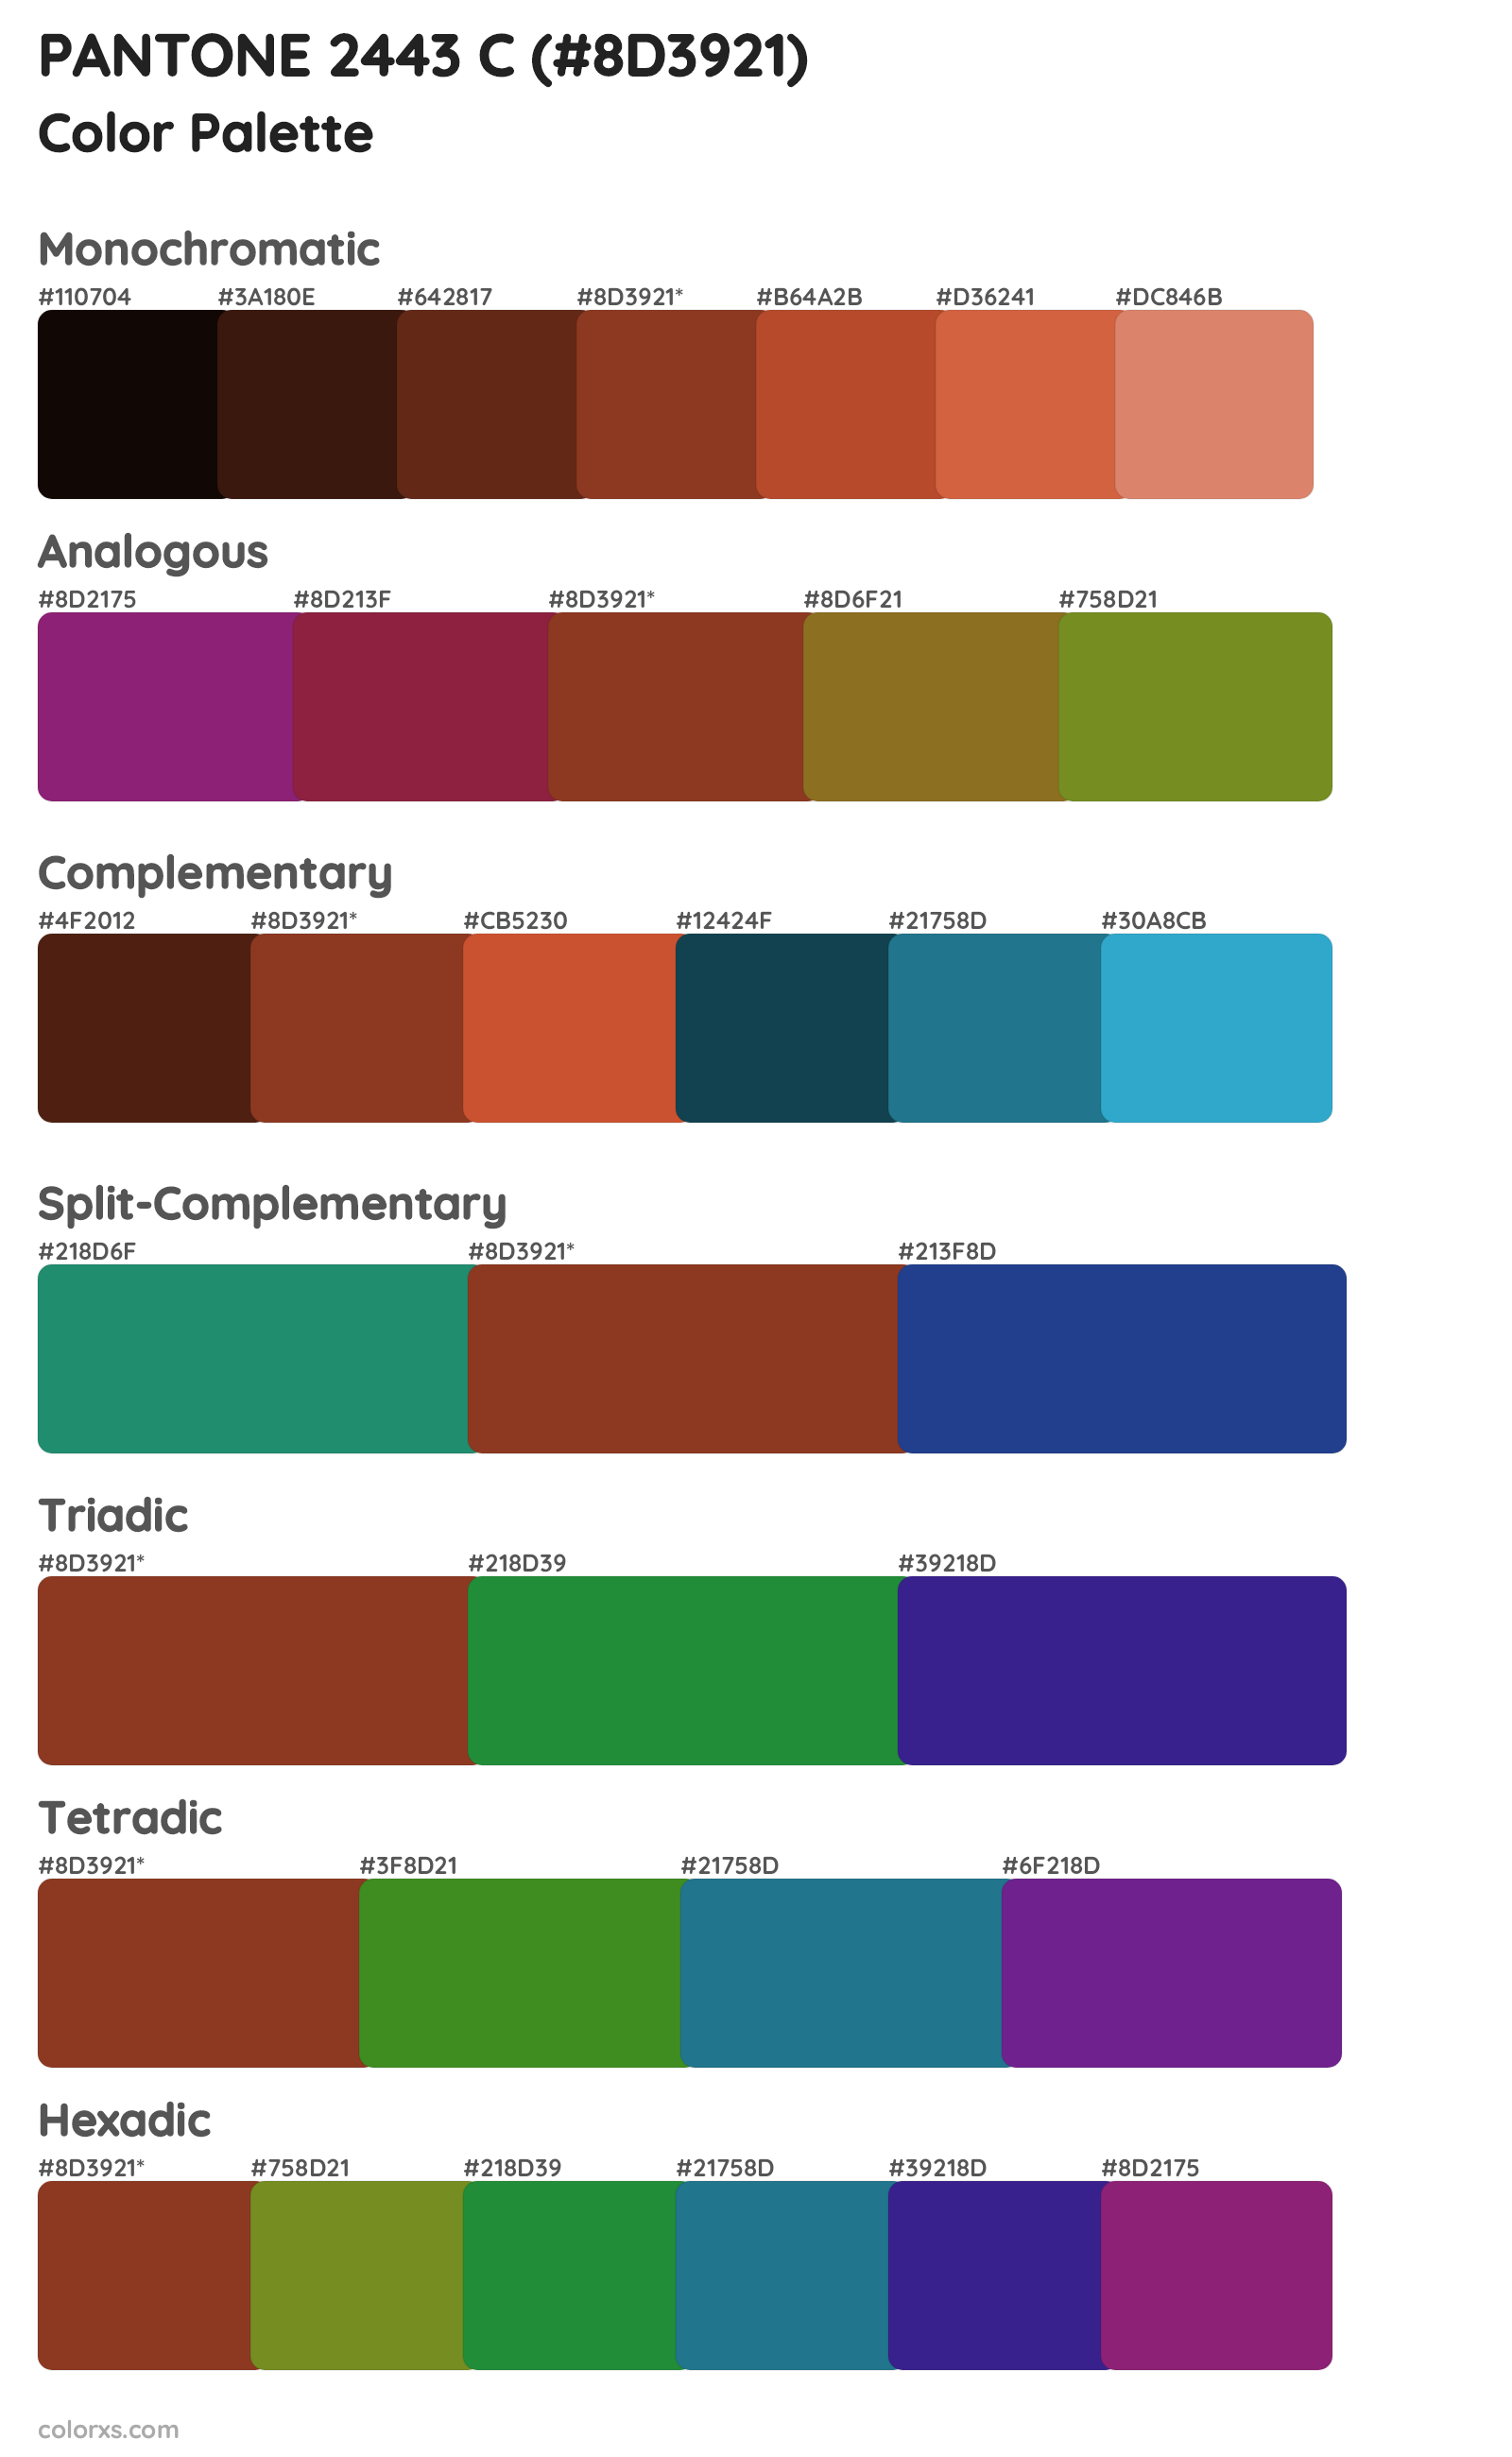 PANTONE 2443 C Color Scheme Palettes